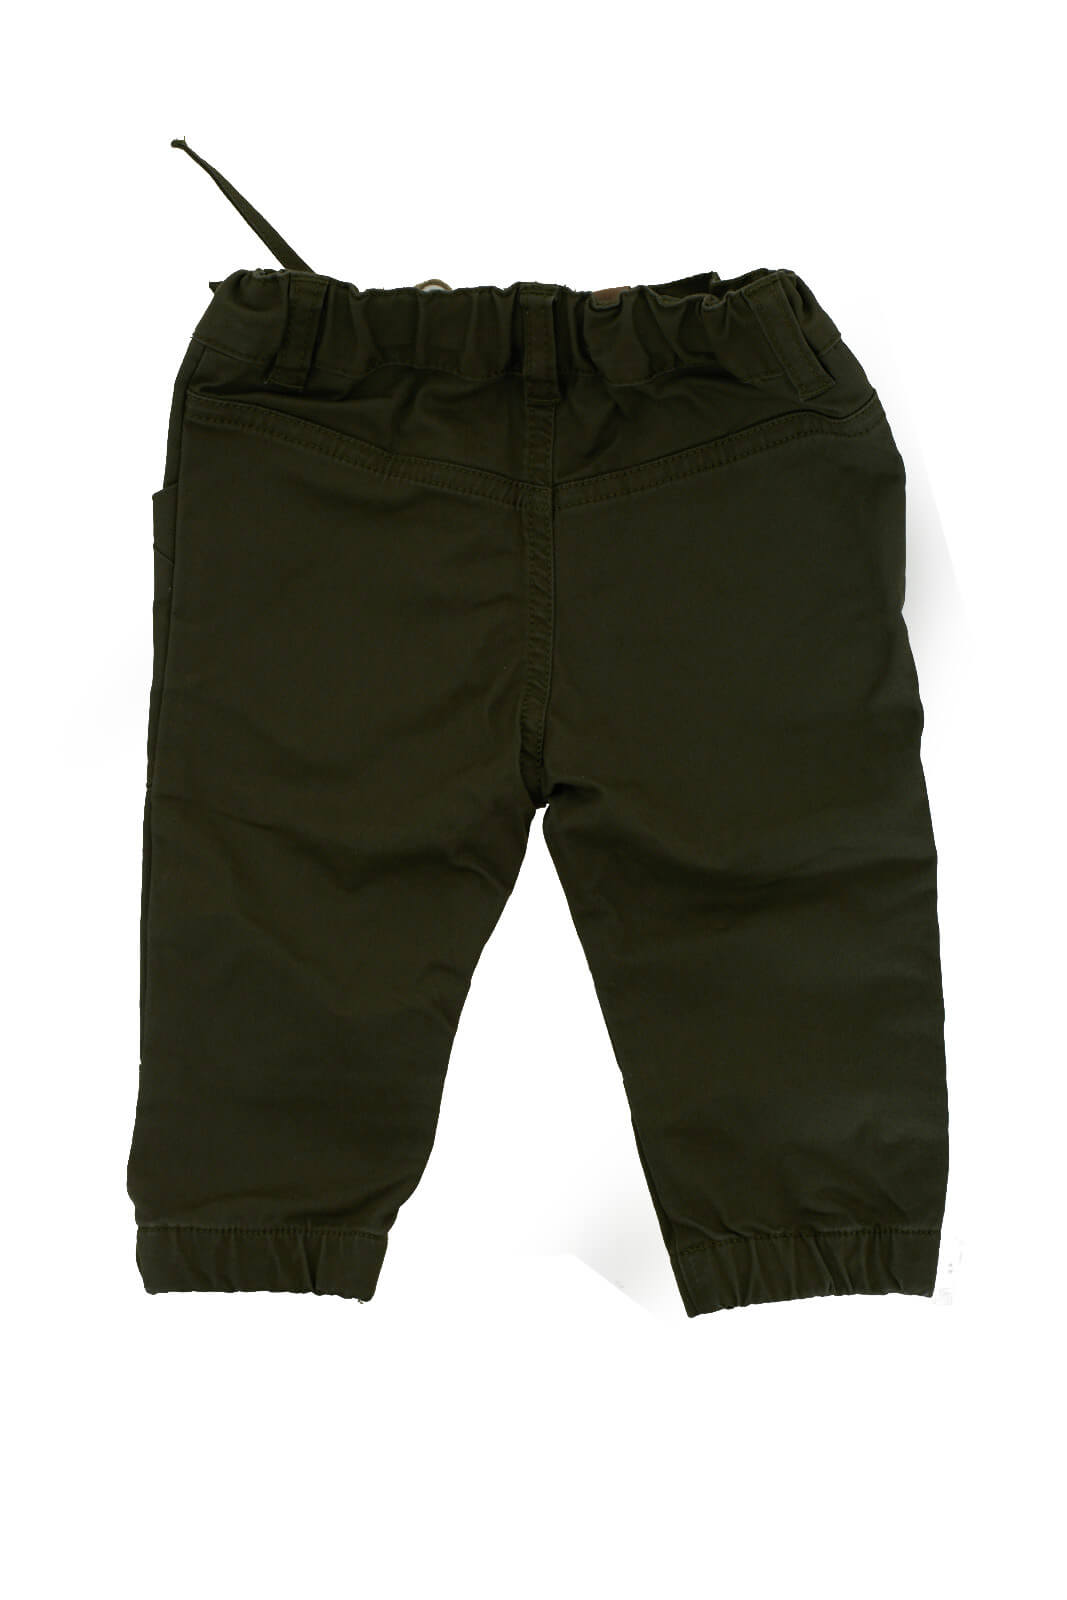 Timberland pantalone bambino